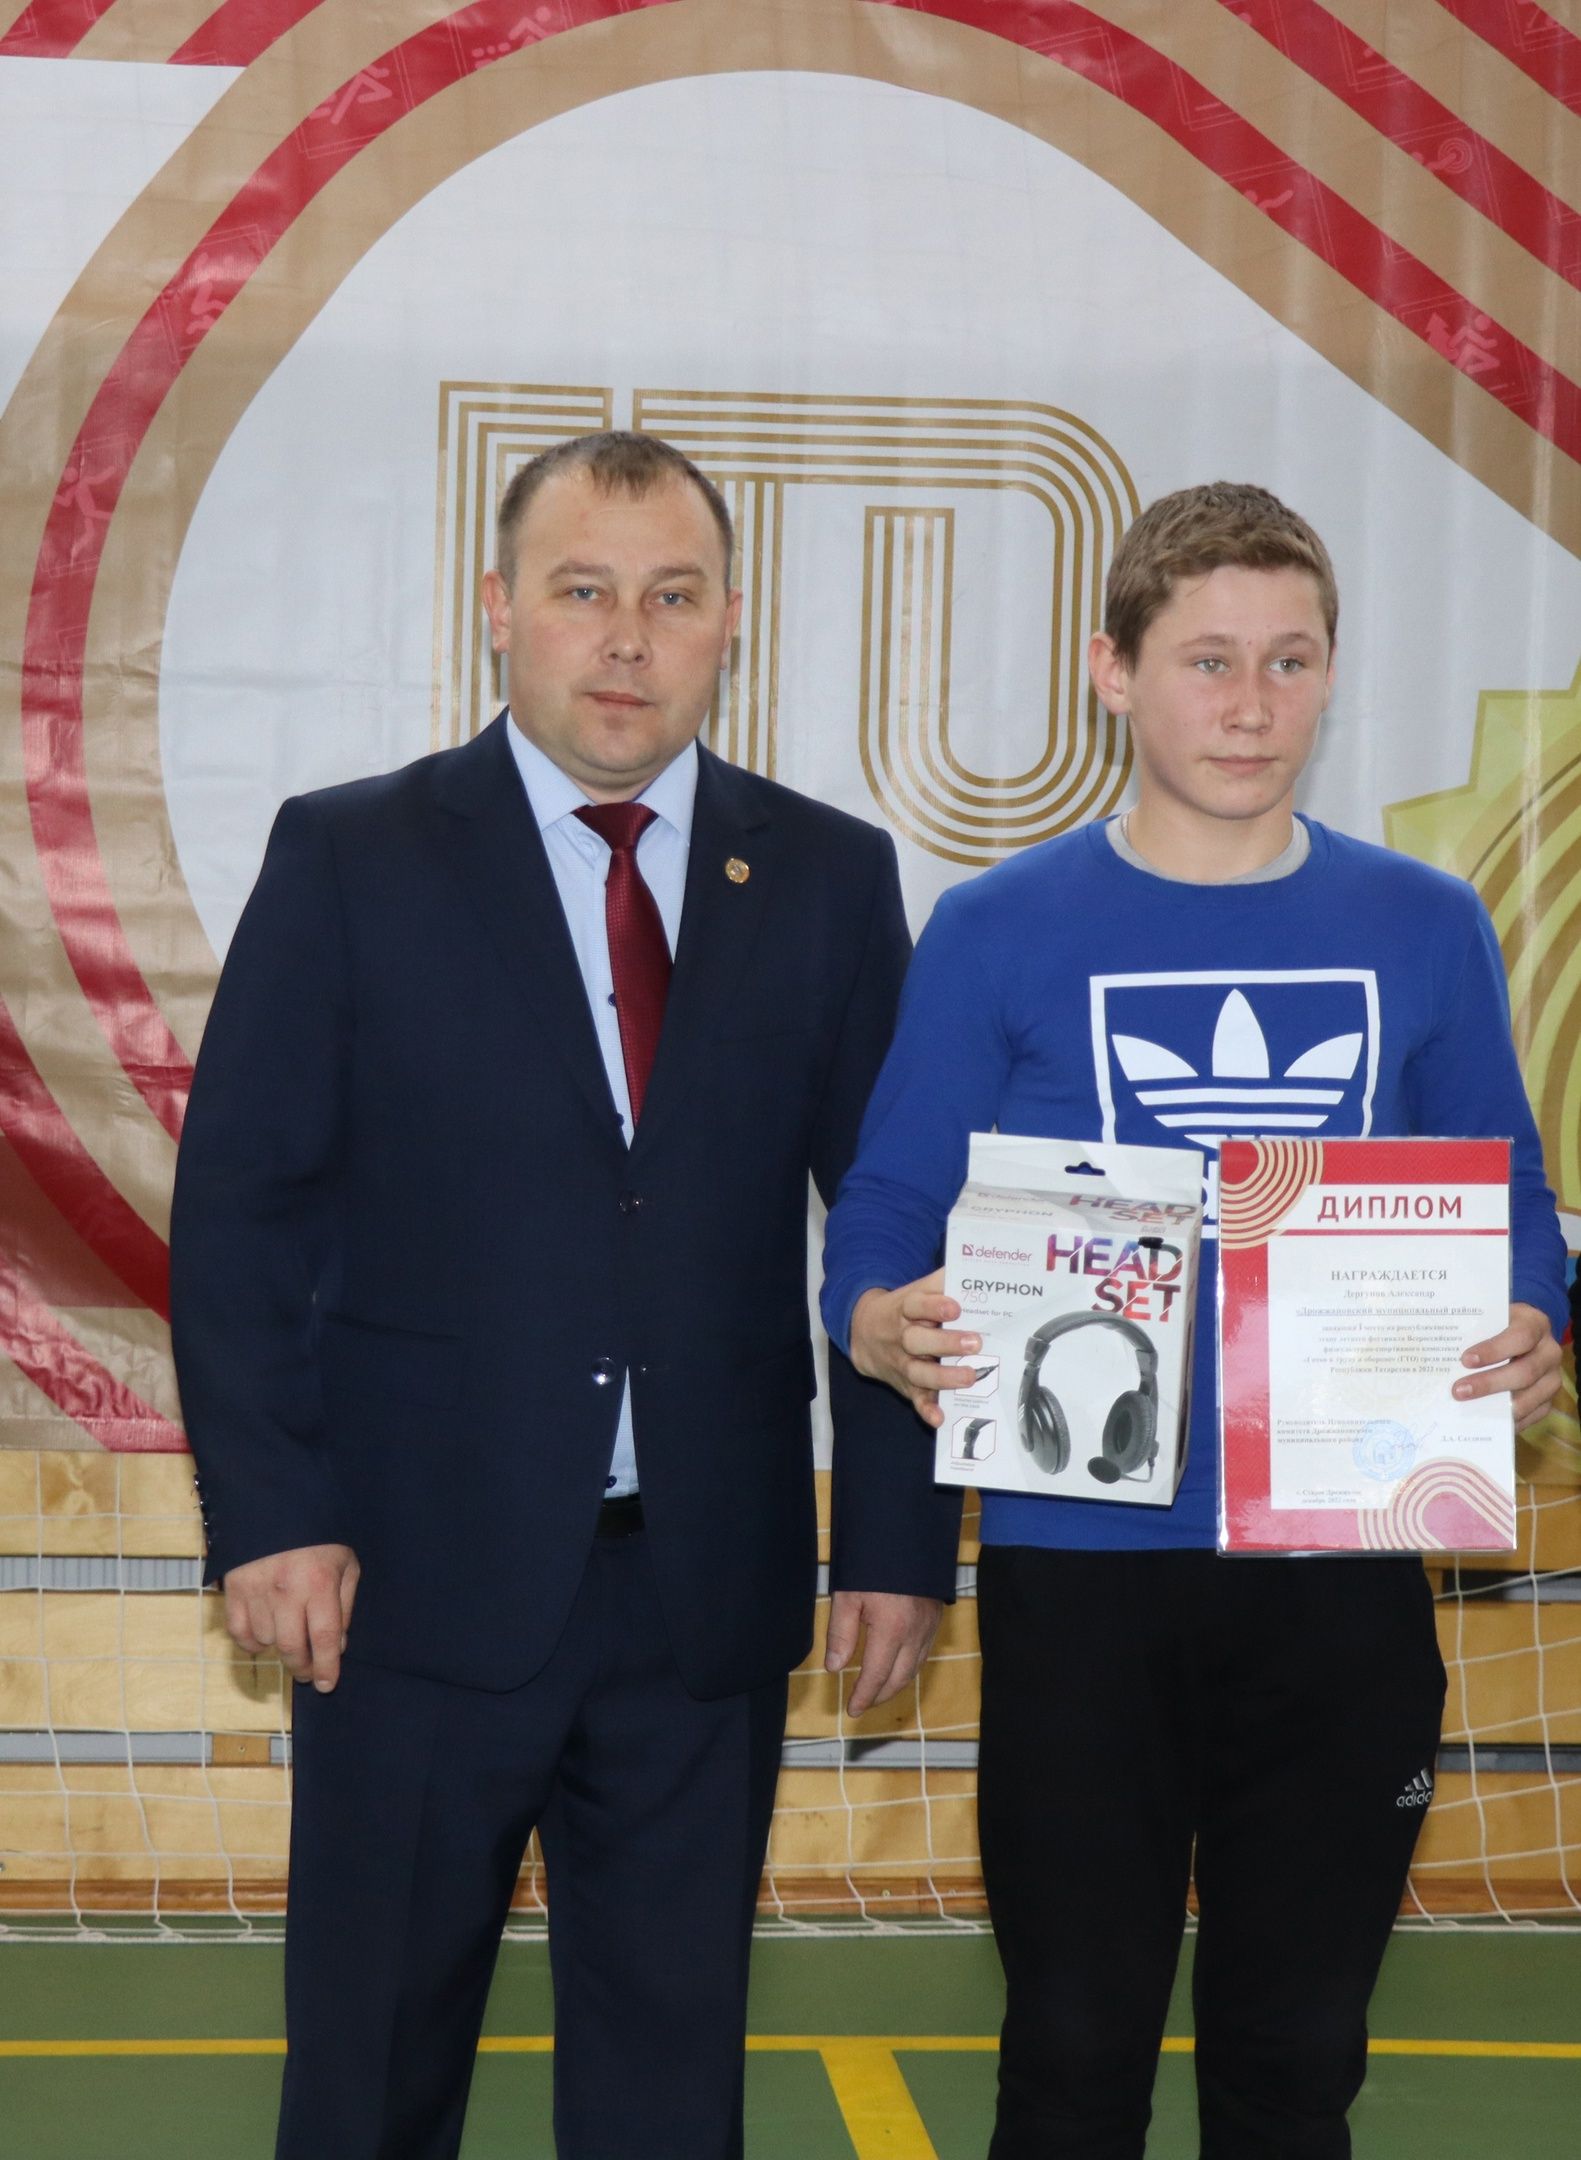 В Дрожжановском районе стартовал зимний фестиваль ВФСК «Готов к труду и обороне» среди учащихся 11-ых классов